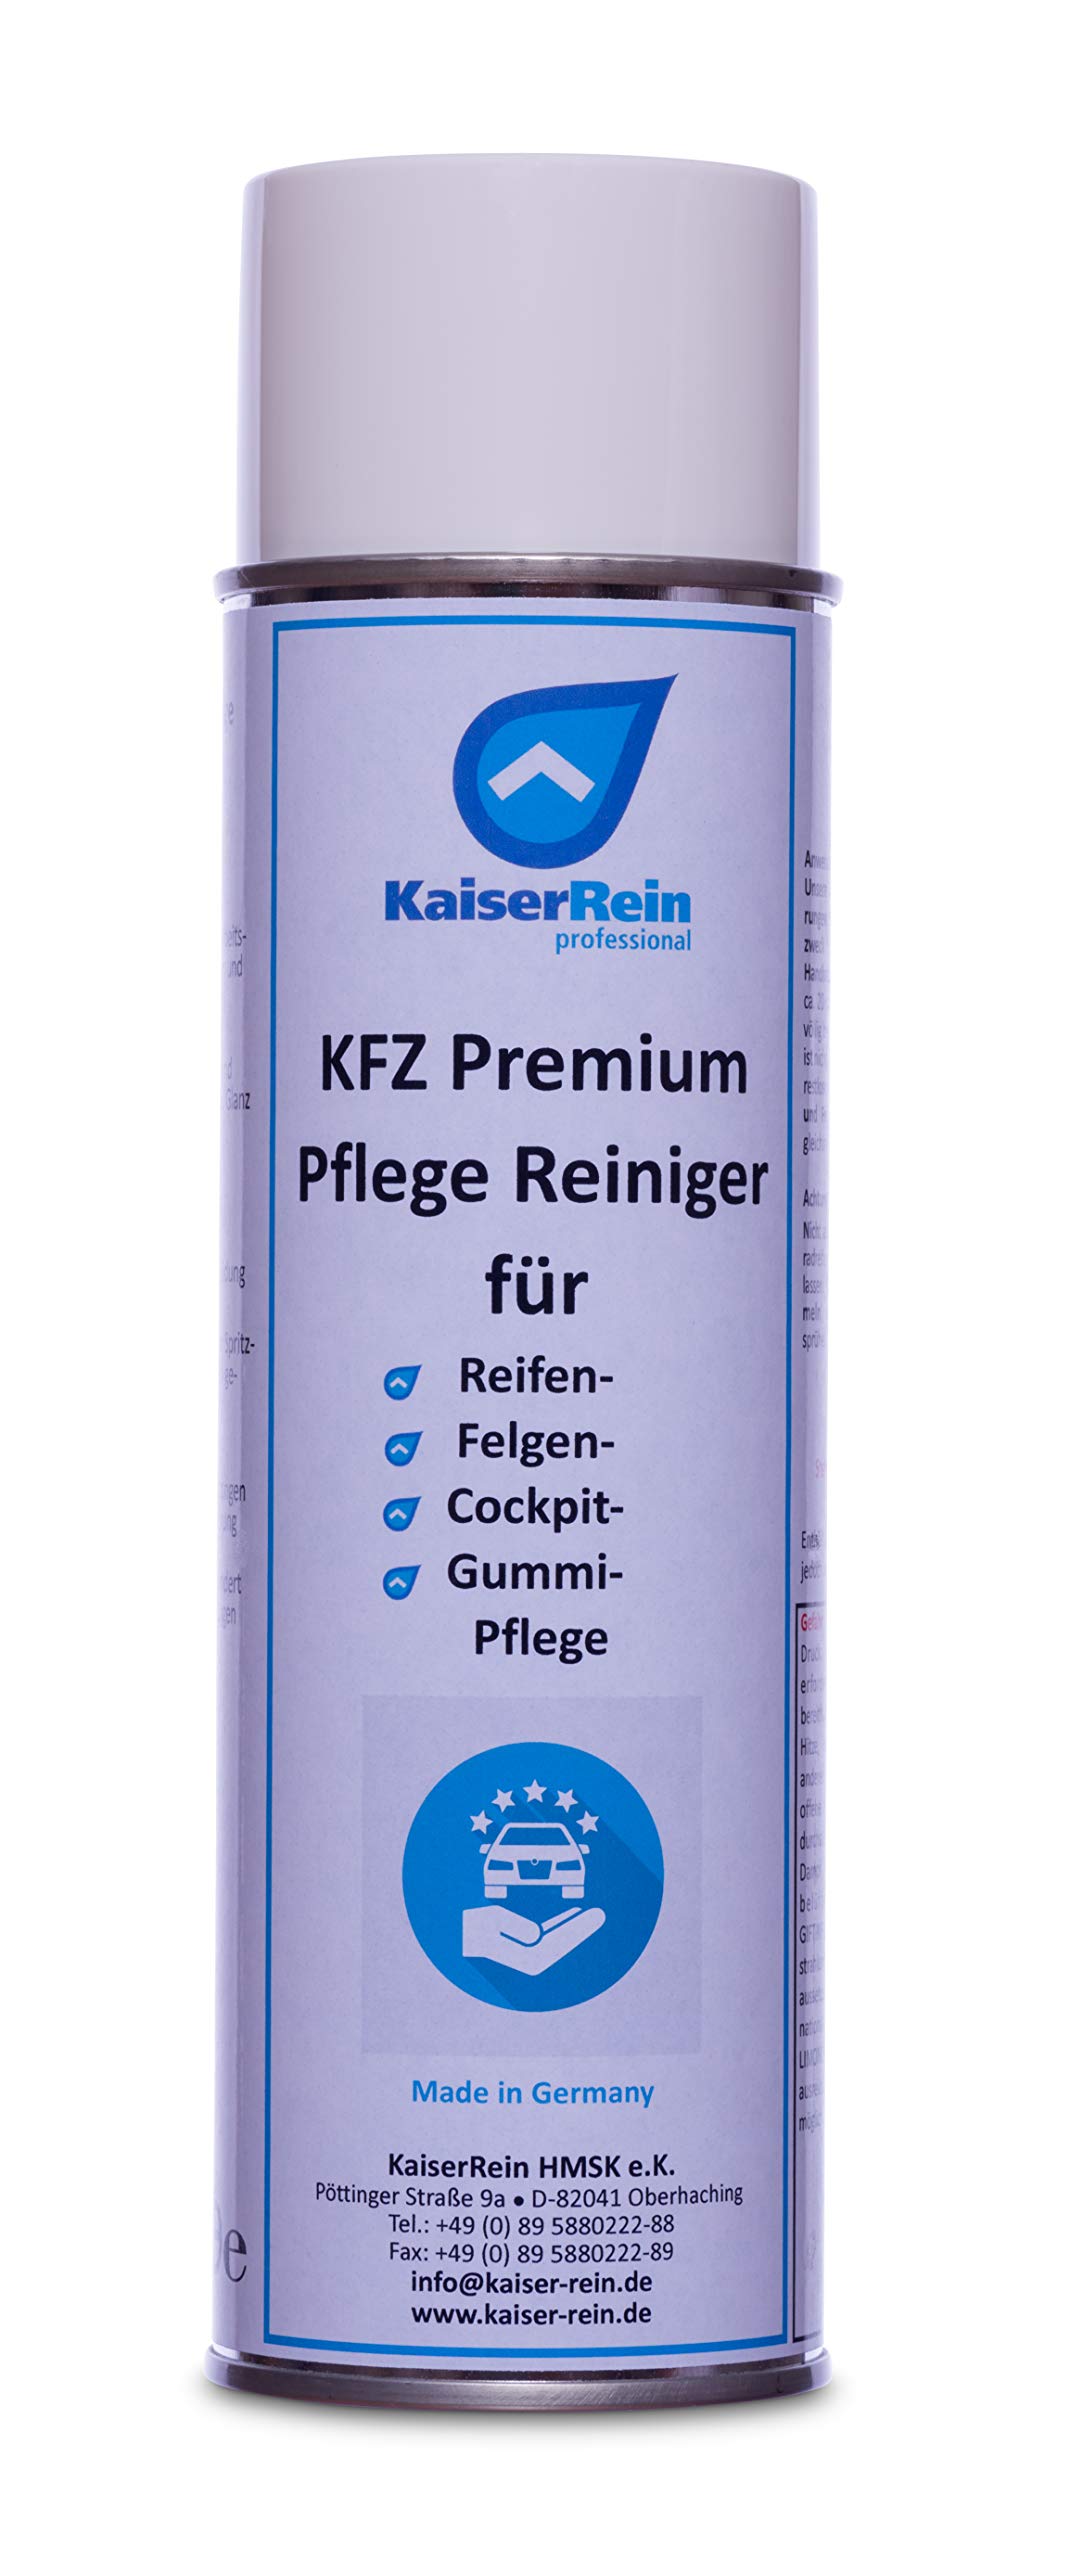 KaiserRein KFZ Premium Pflege Reiniger 500ml für Reifenpflege, Felgenreiniger, Cockpitreiniger und Gummipflege Universalreiniger Auto von KaiserRein professional